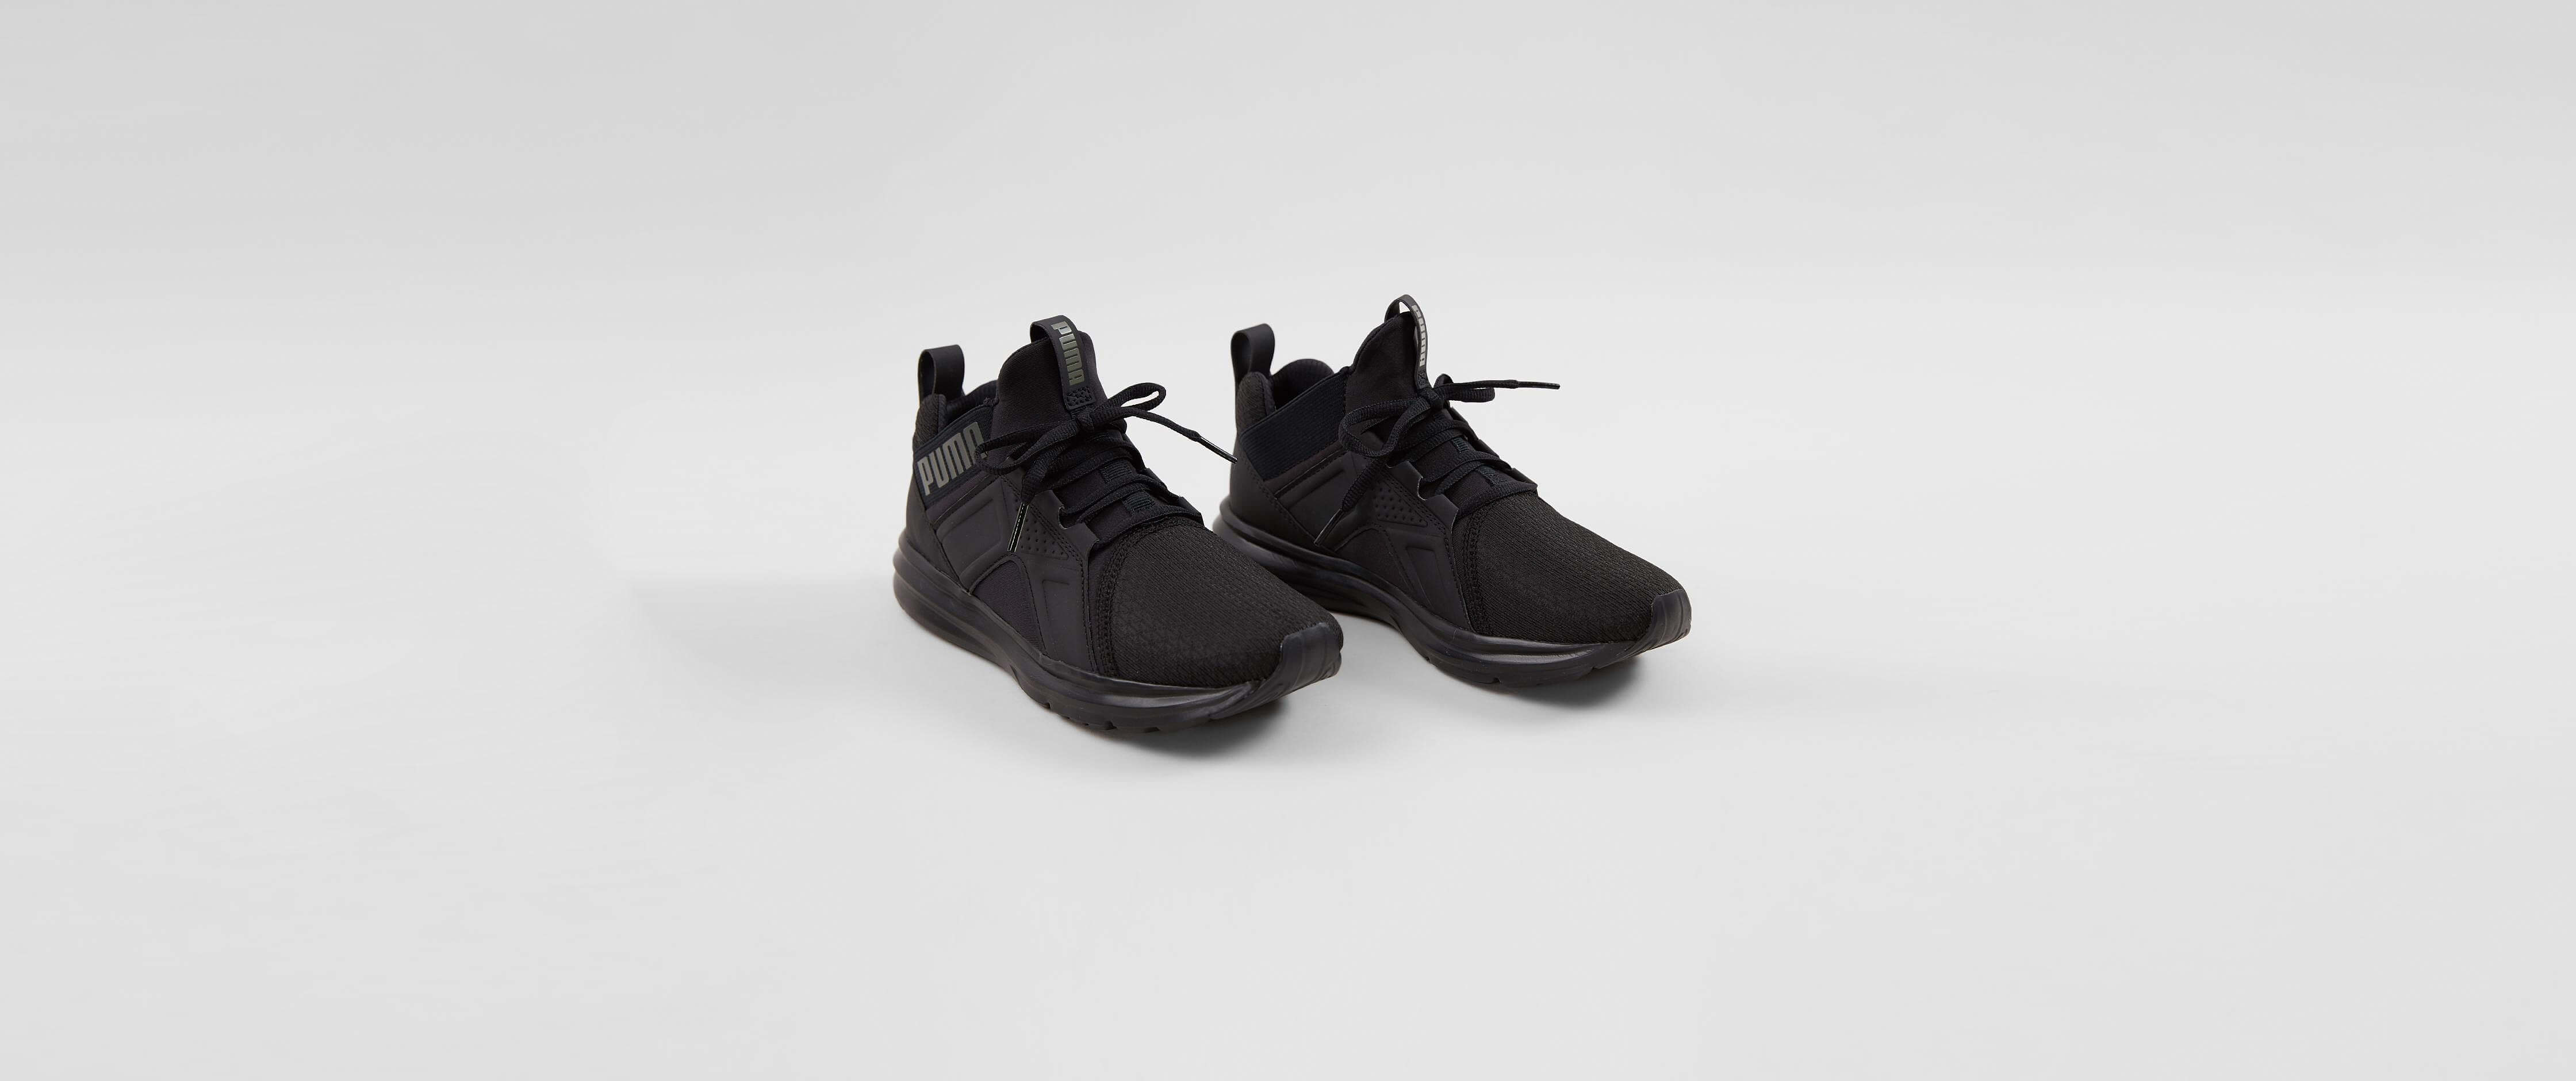 black puma shoes for boys